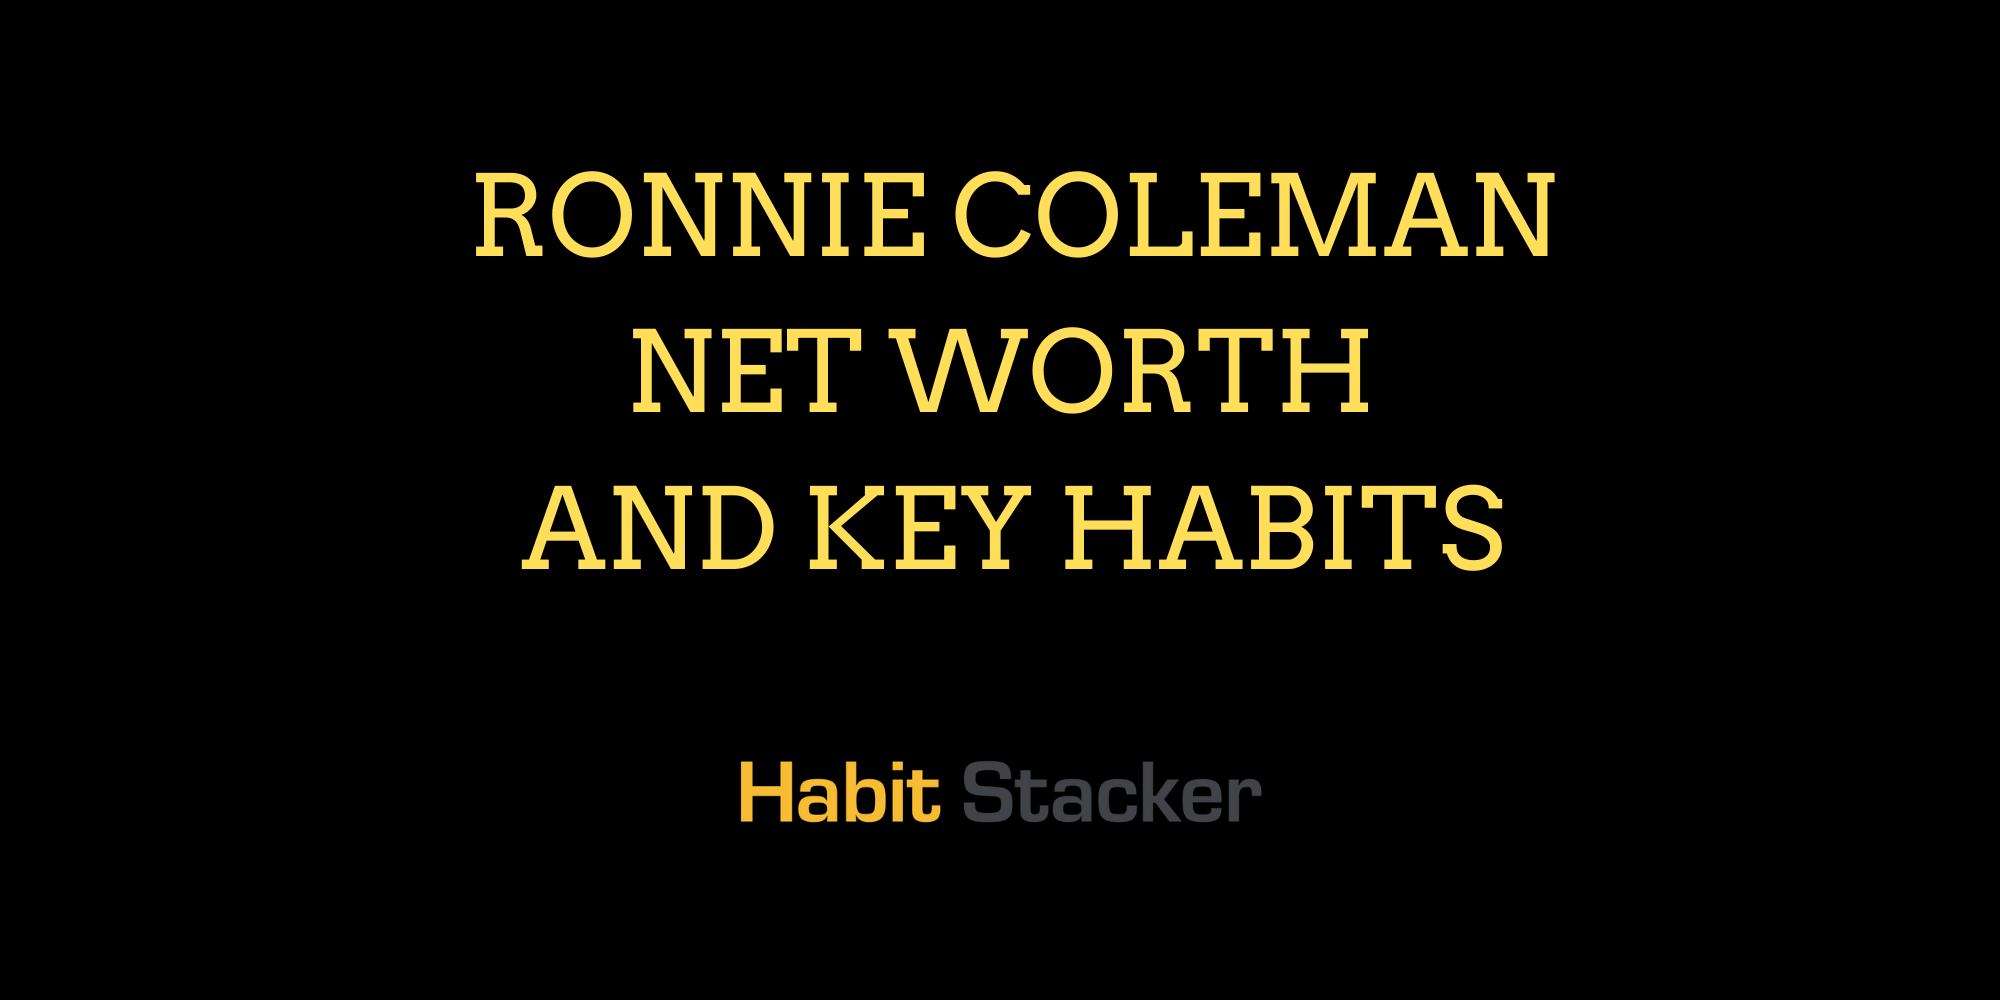 Ronnie Coleman Net Worth